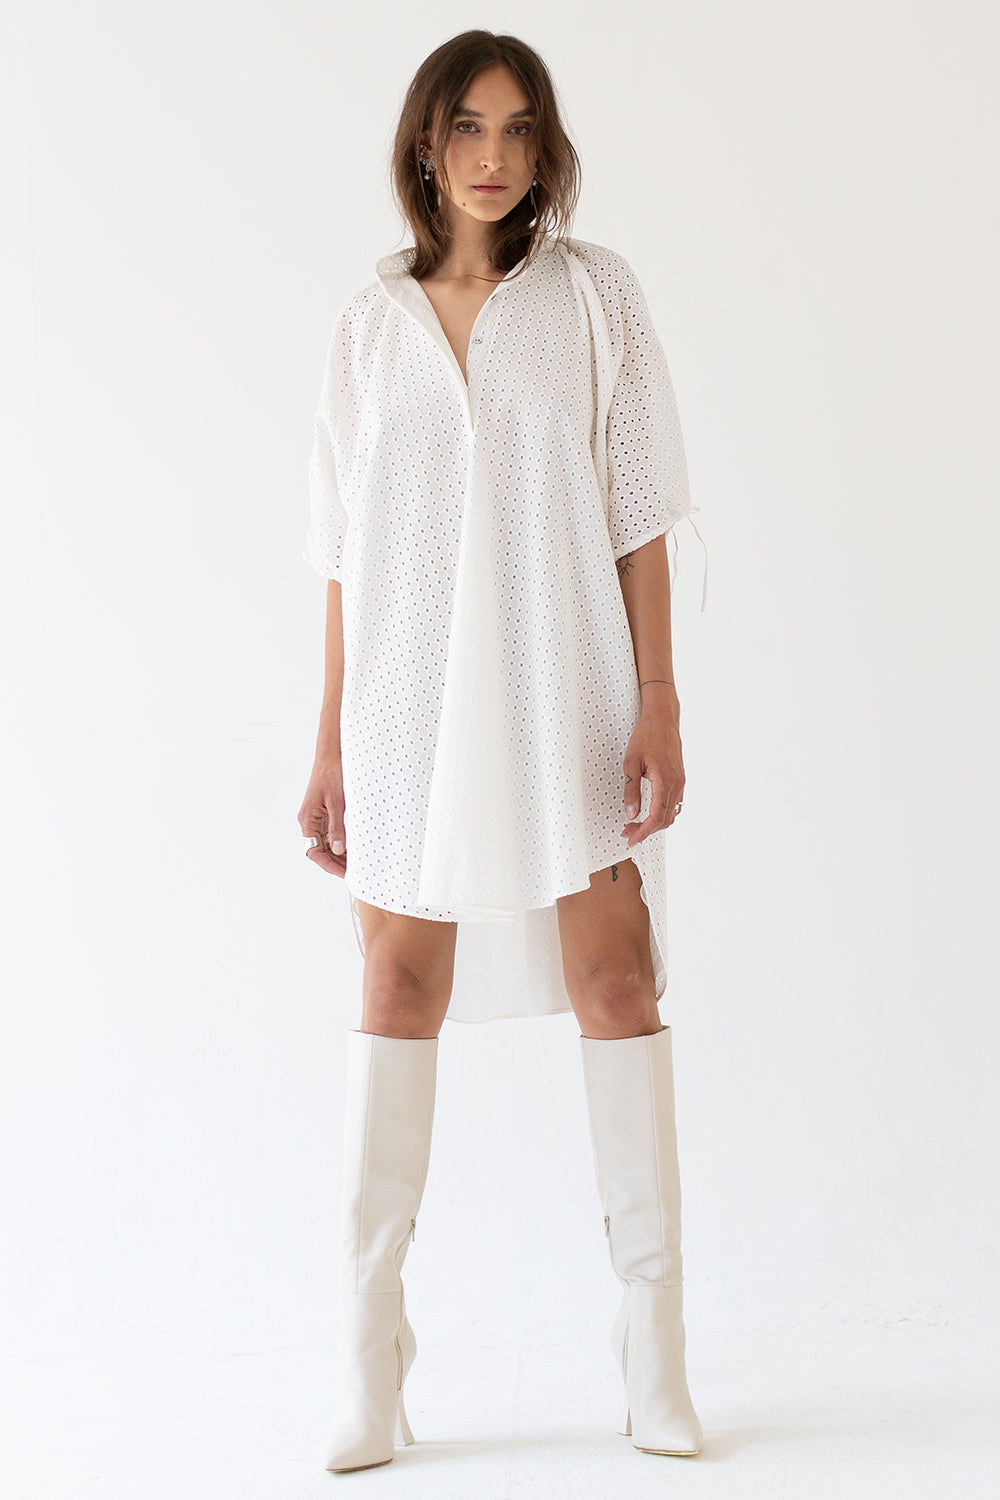 DRESS "BALOON" MADEIRA - WHITE